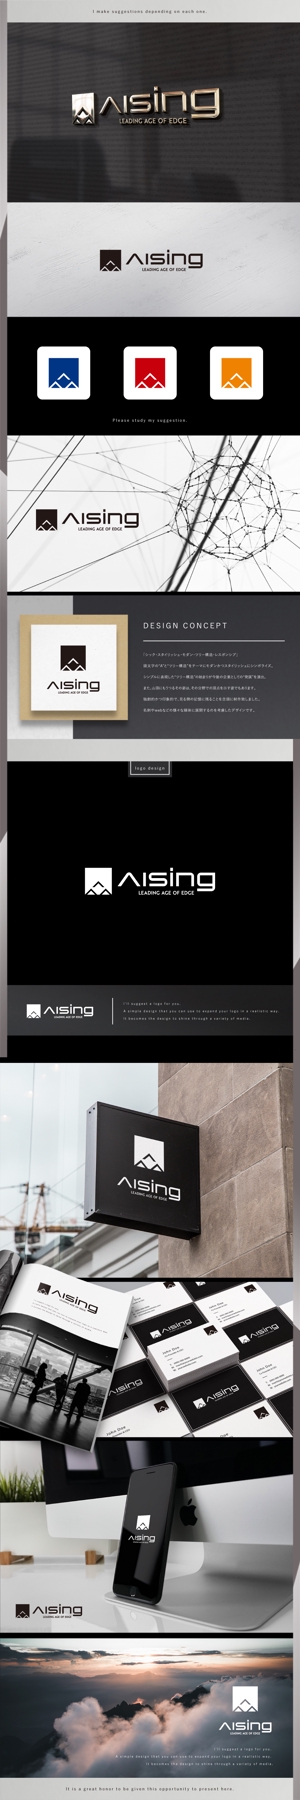 machi (machi_2014)さんのAIベンチャー企業「AISing」(エイシング)のロゴへの提案